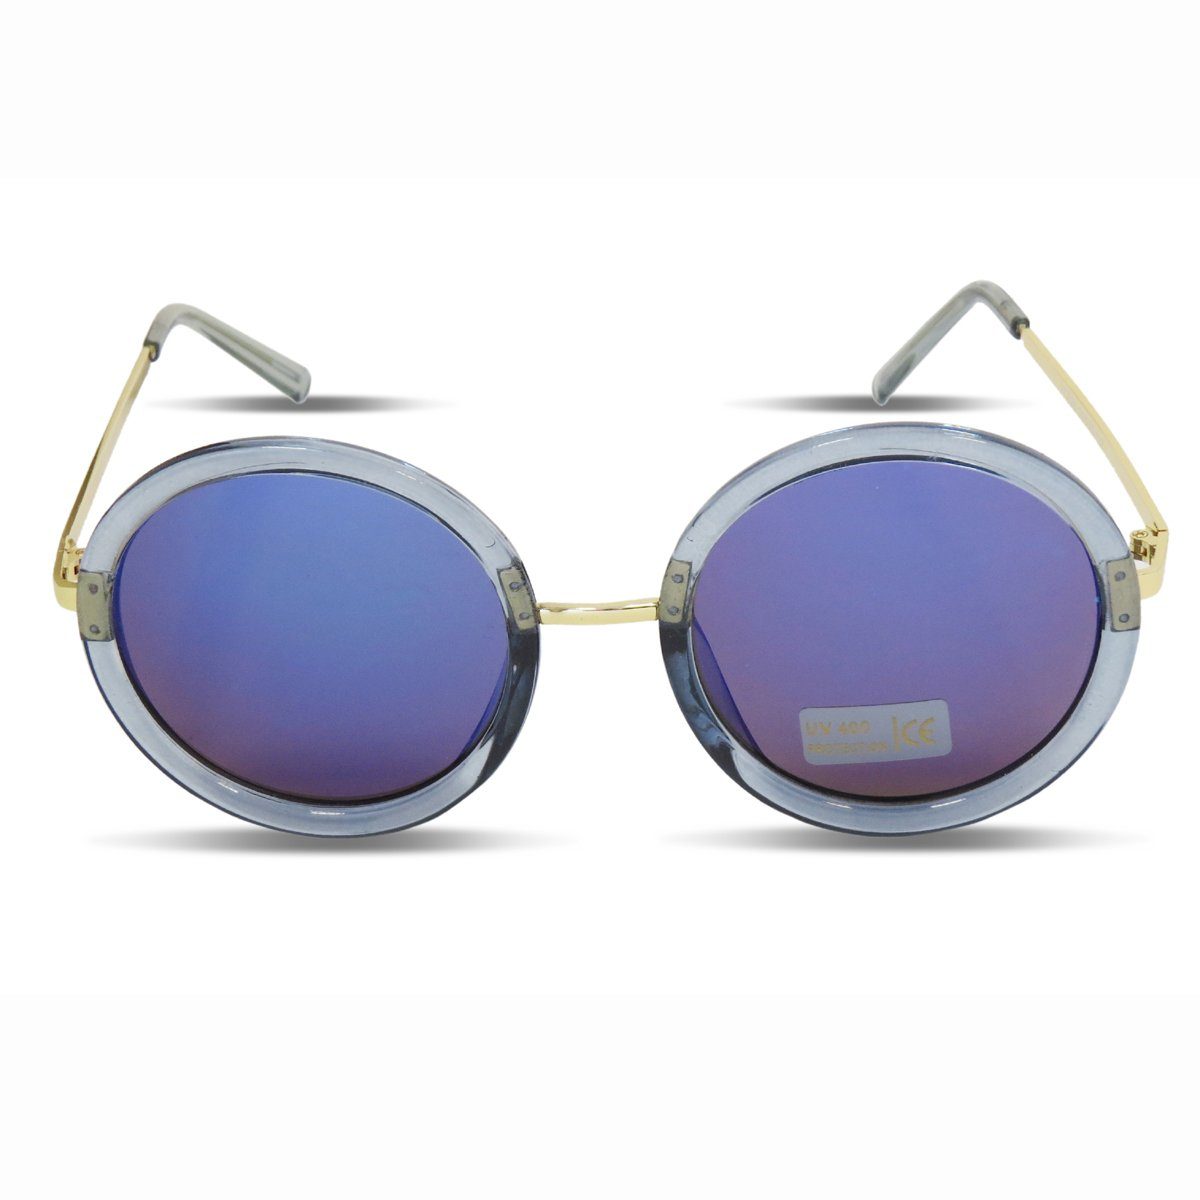 Sonia Originelli Sonnenbrille Sonnenbrille Verspiegelt Rund Damen Trend Sommer Onesize blau | Sonnenbrillen